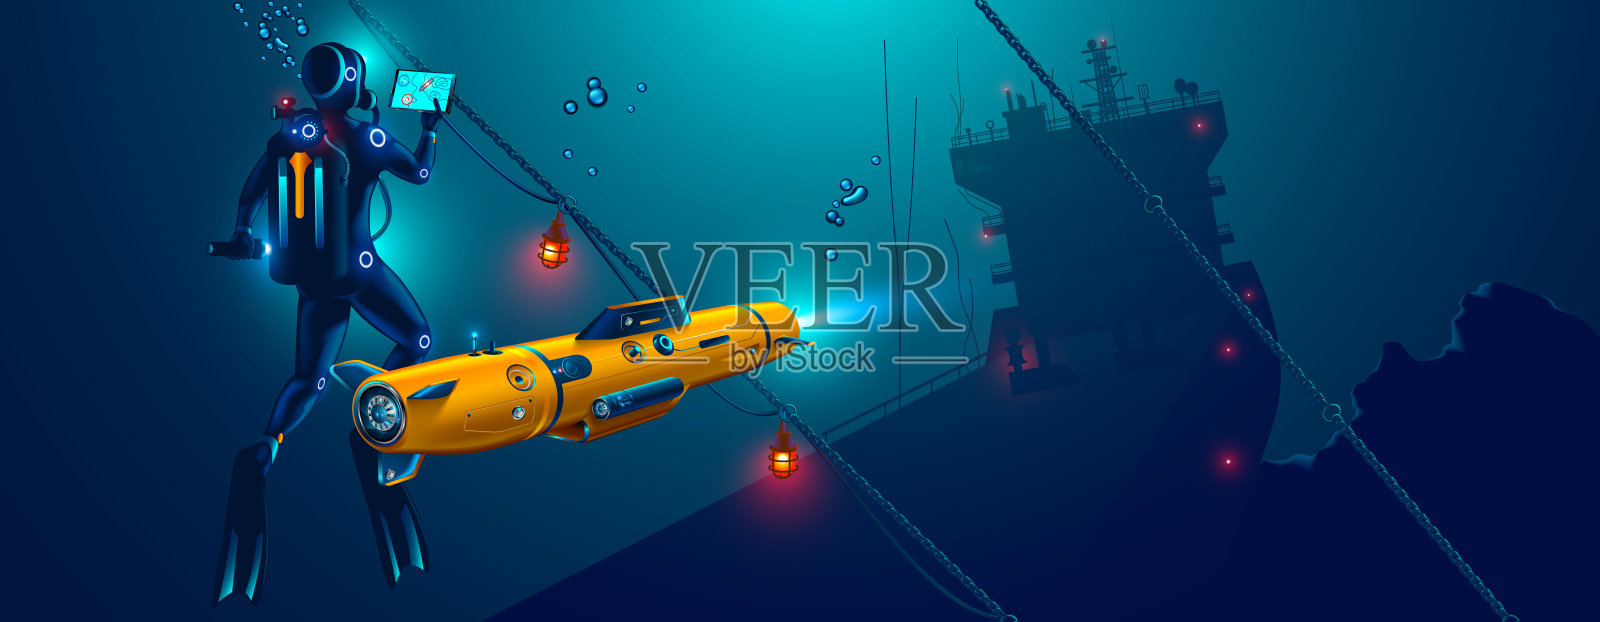 水下自主机器人探测海底。水下无人潜航器与潜水员探索沉船地点。插画图片素材